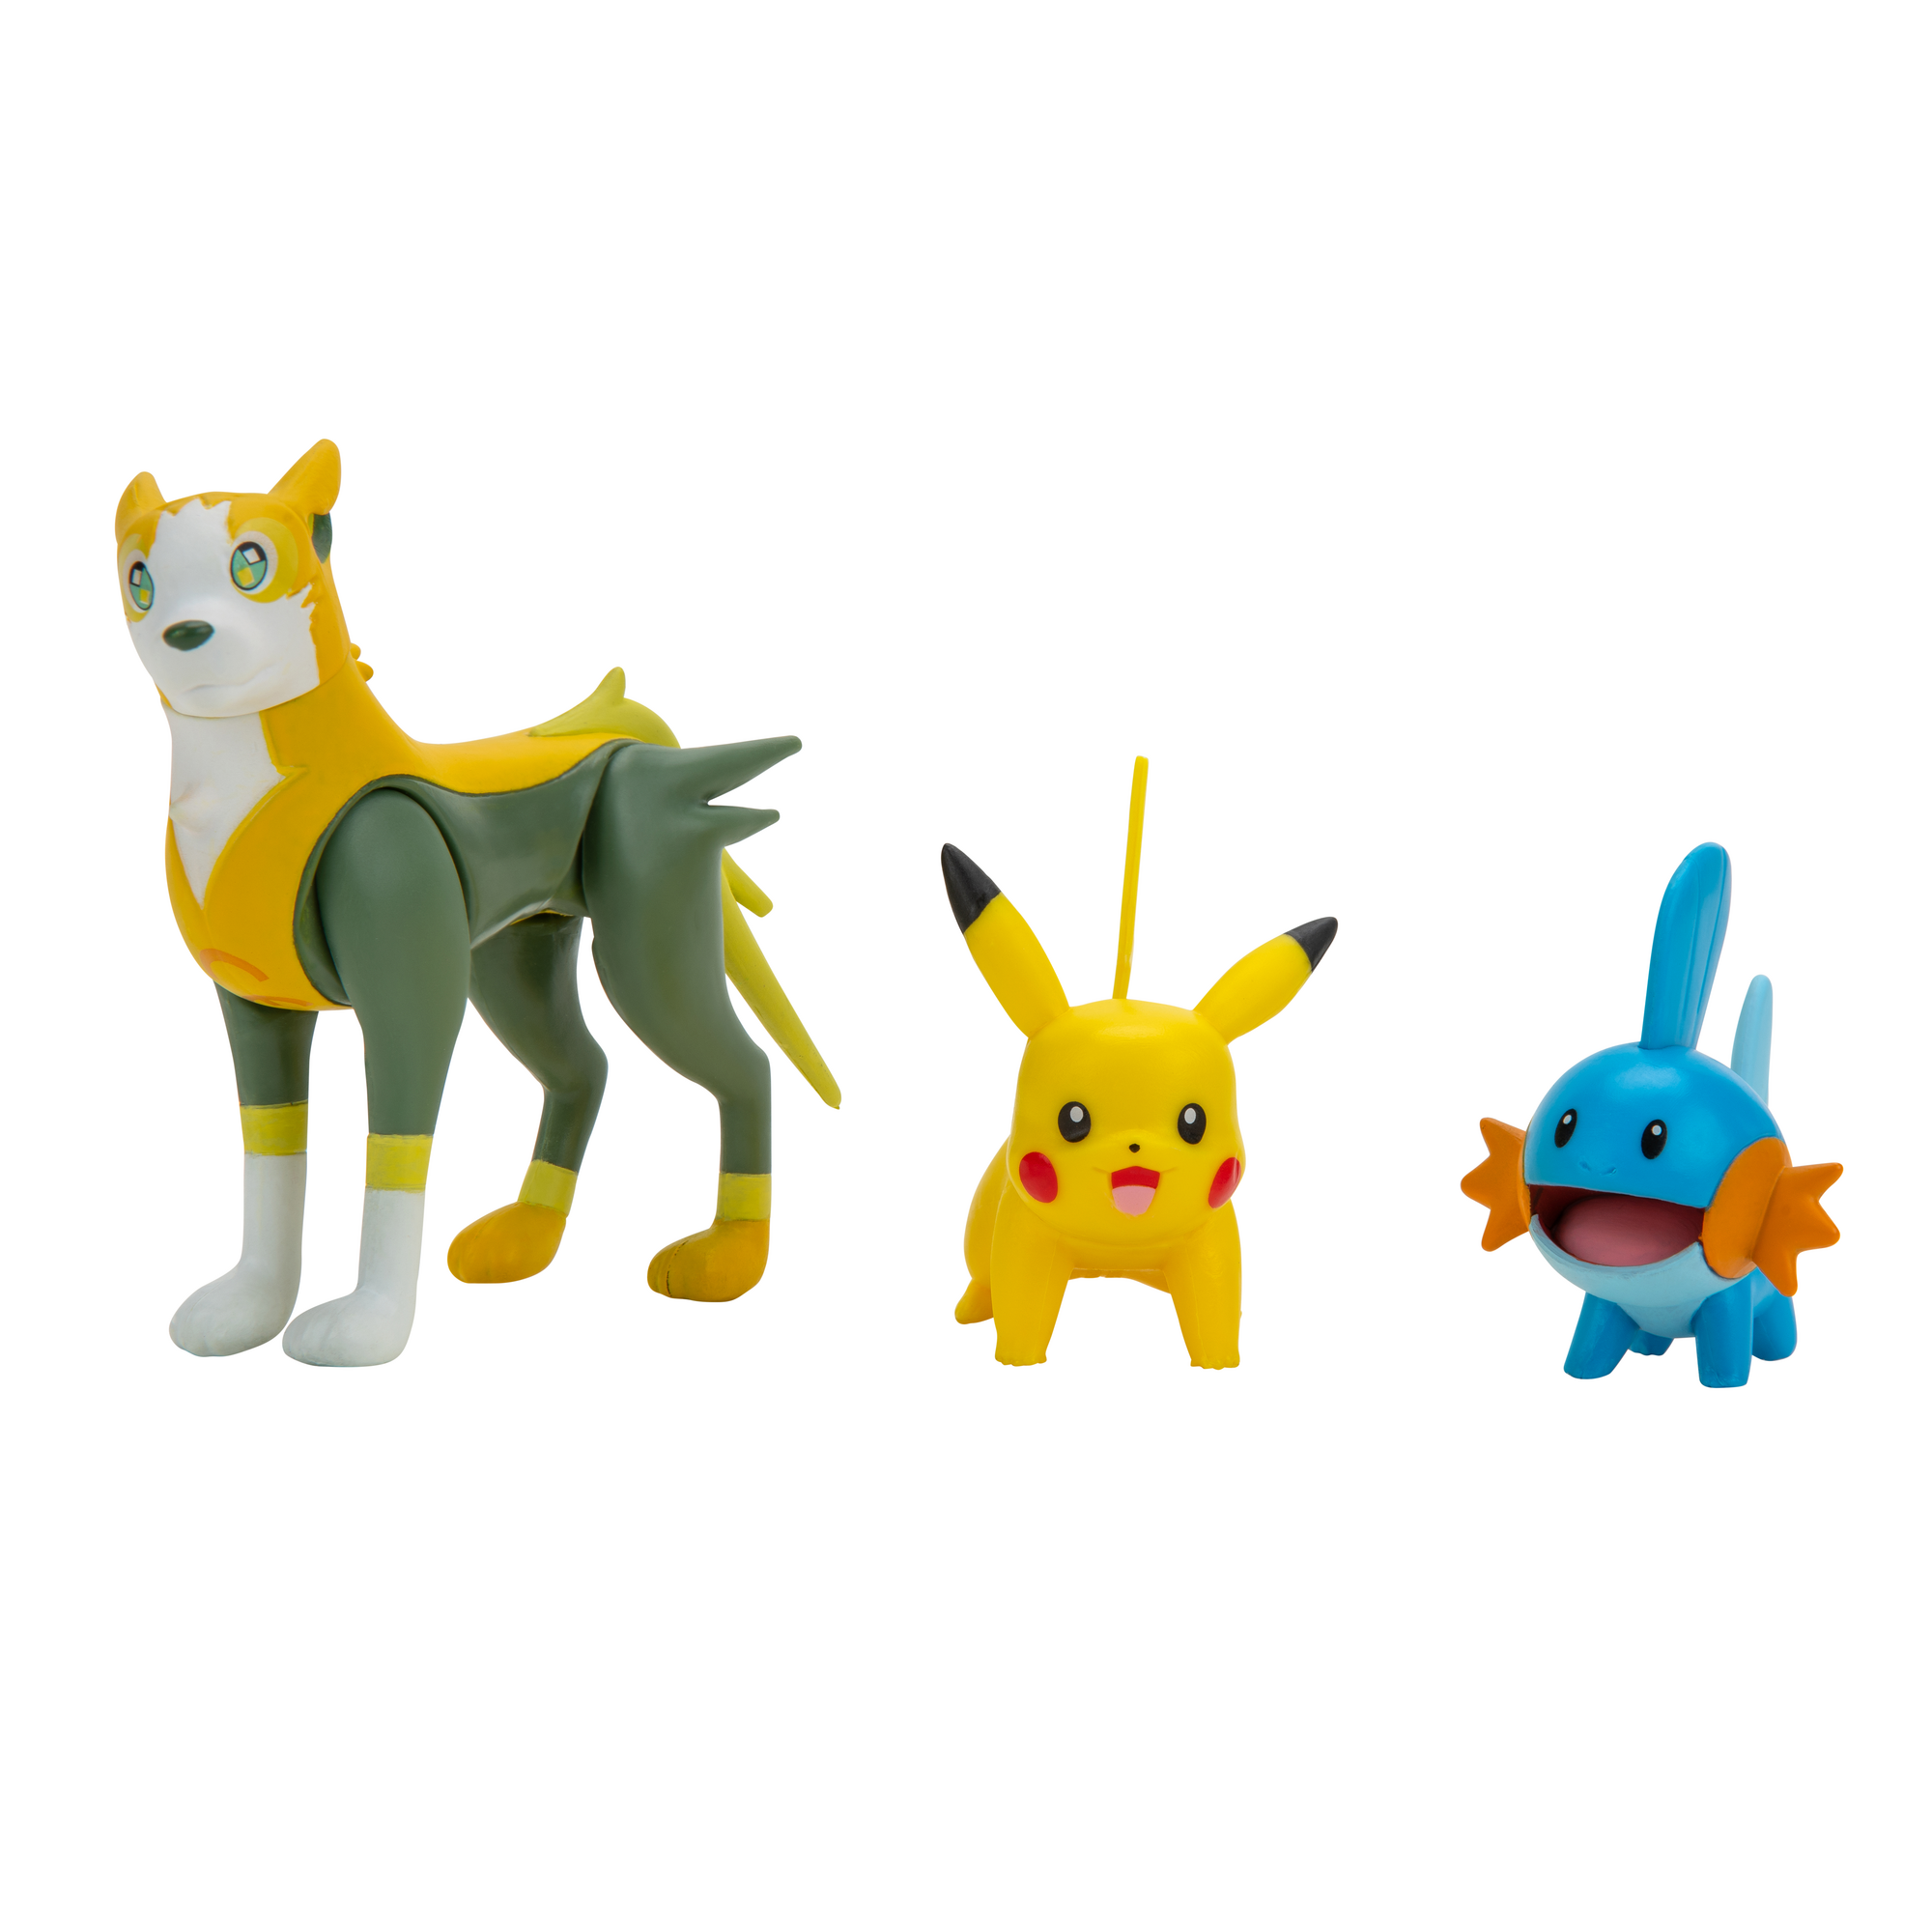 Pokémon - Battle Figure 3-pack - Pikachu, Mudkip, Boltund - (95155-12)